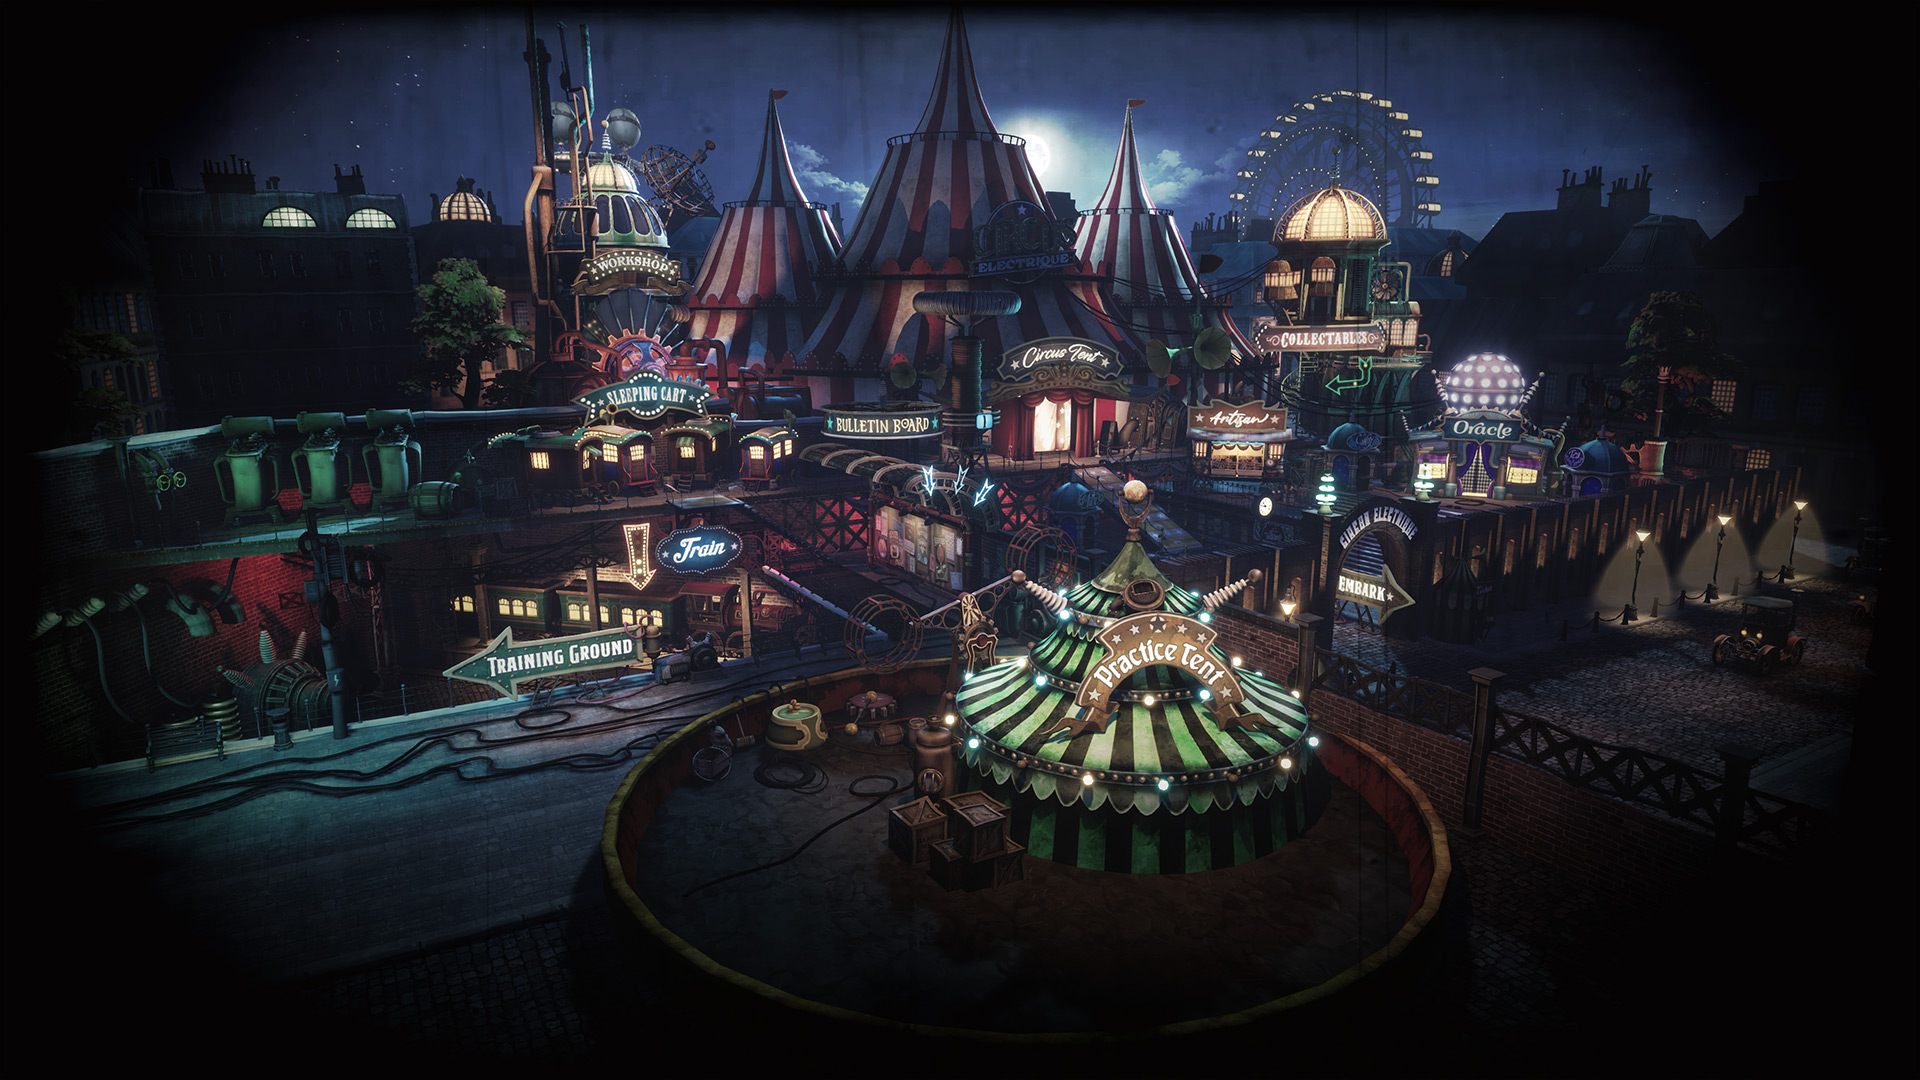 Circus Electrique - circo steampunk en el espíritu de Darkest Dungeon se lanzará el 6 de septiembre